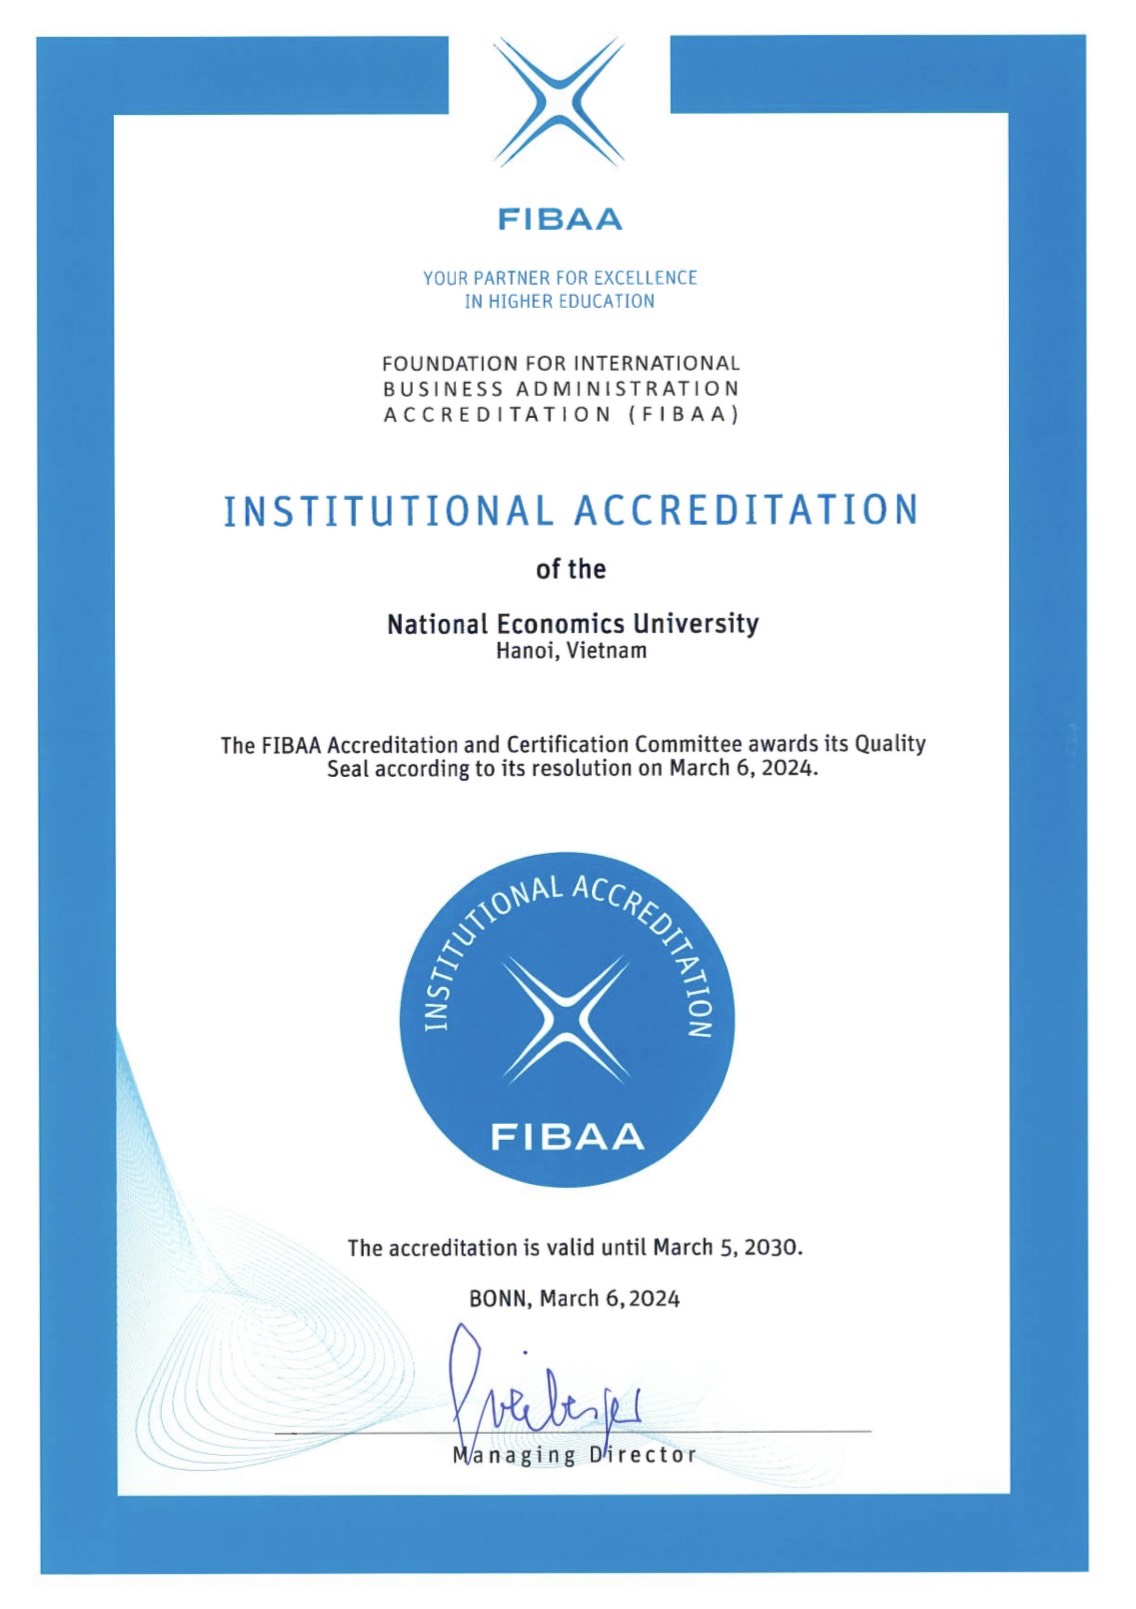 Trường Đại học Kinh tế Quốc dân được cấp chứng nhận đạt chuẩn chất lượng cơ sở giáo dục của FIBAA - Ảnh 1.